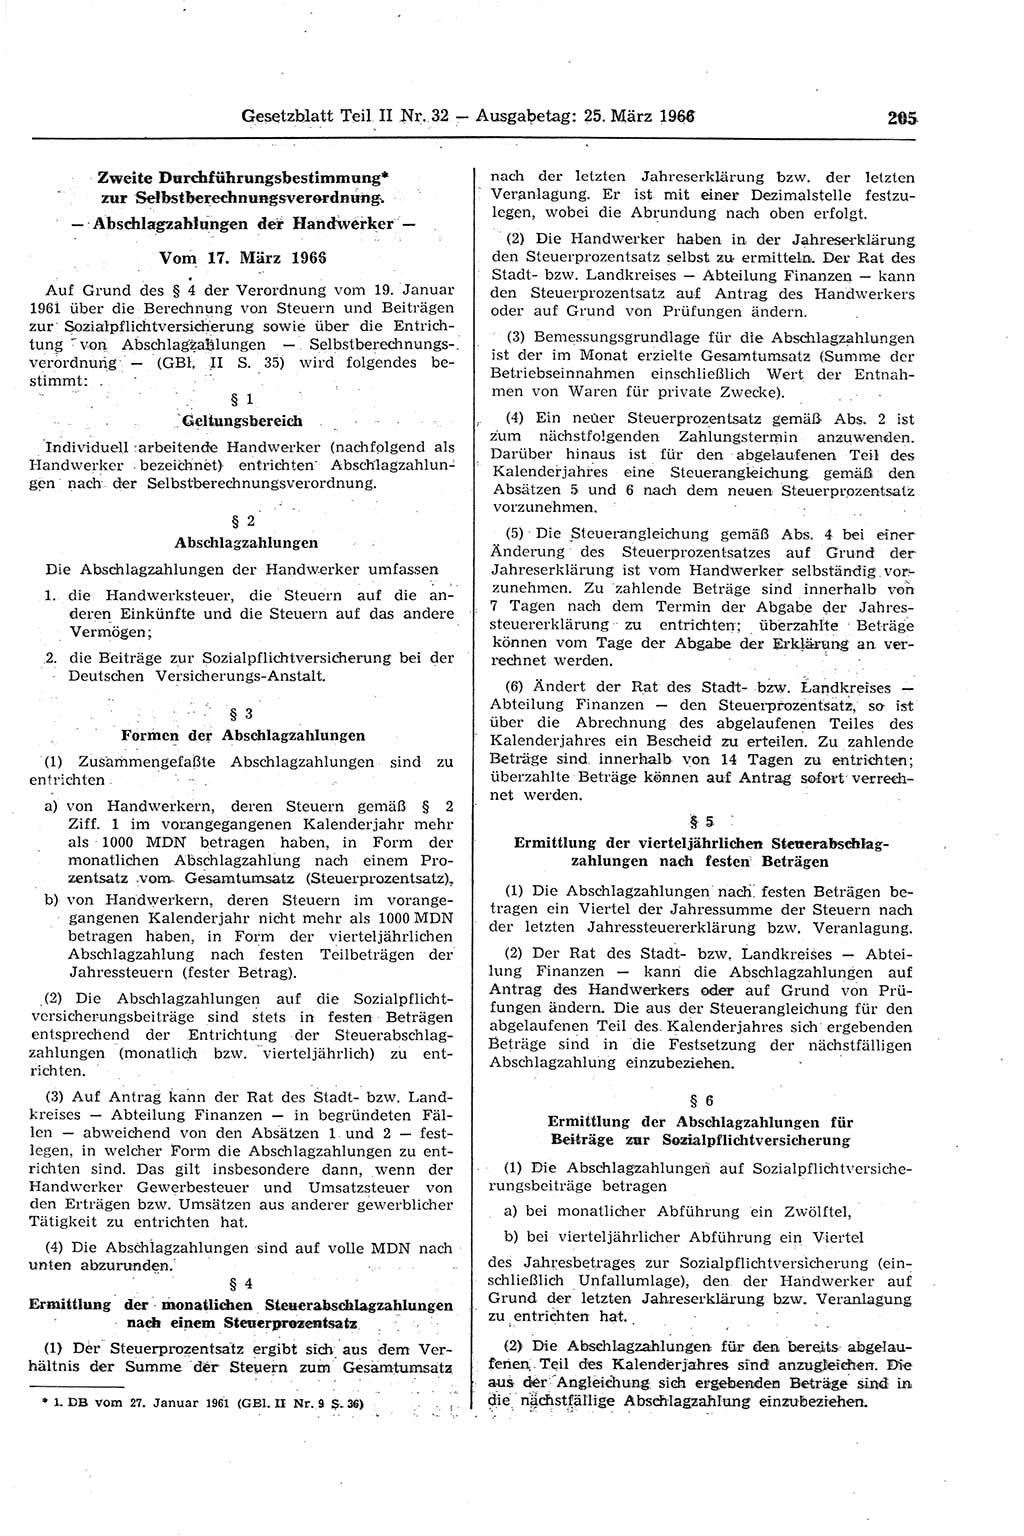 Gesetzblatt (GBl.) der Deutschen Demokratischen Republik (DDR) Teil ⅠⅠ 1966, Seite 205 (GBl. DDR ⅠⅠ 1966, S. 205)